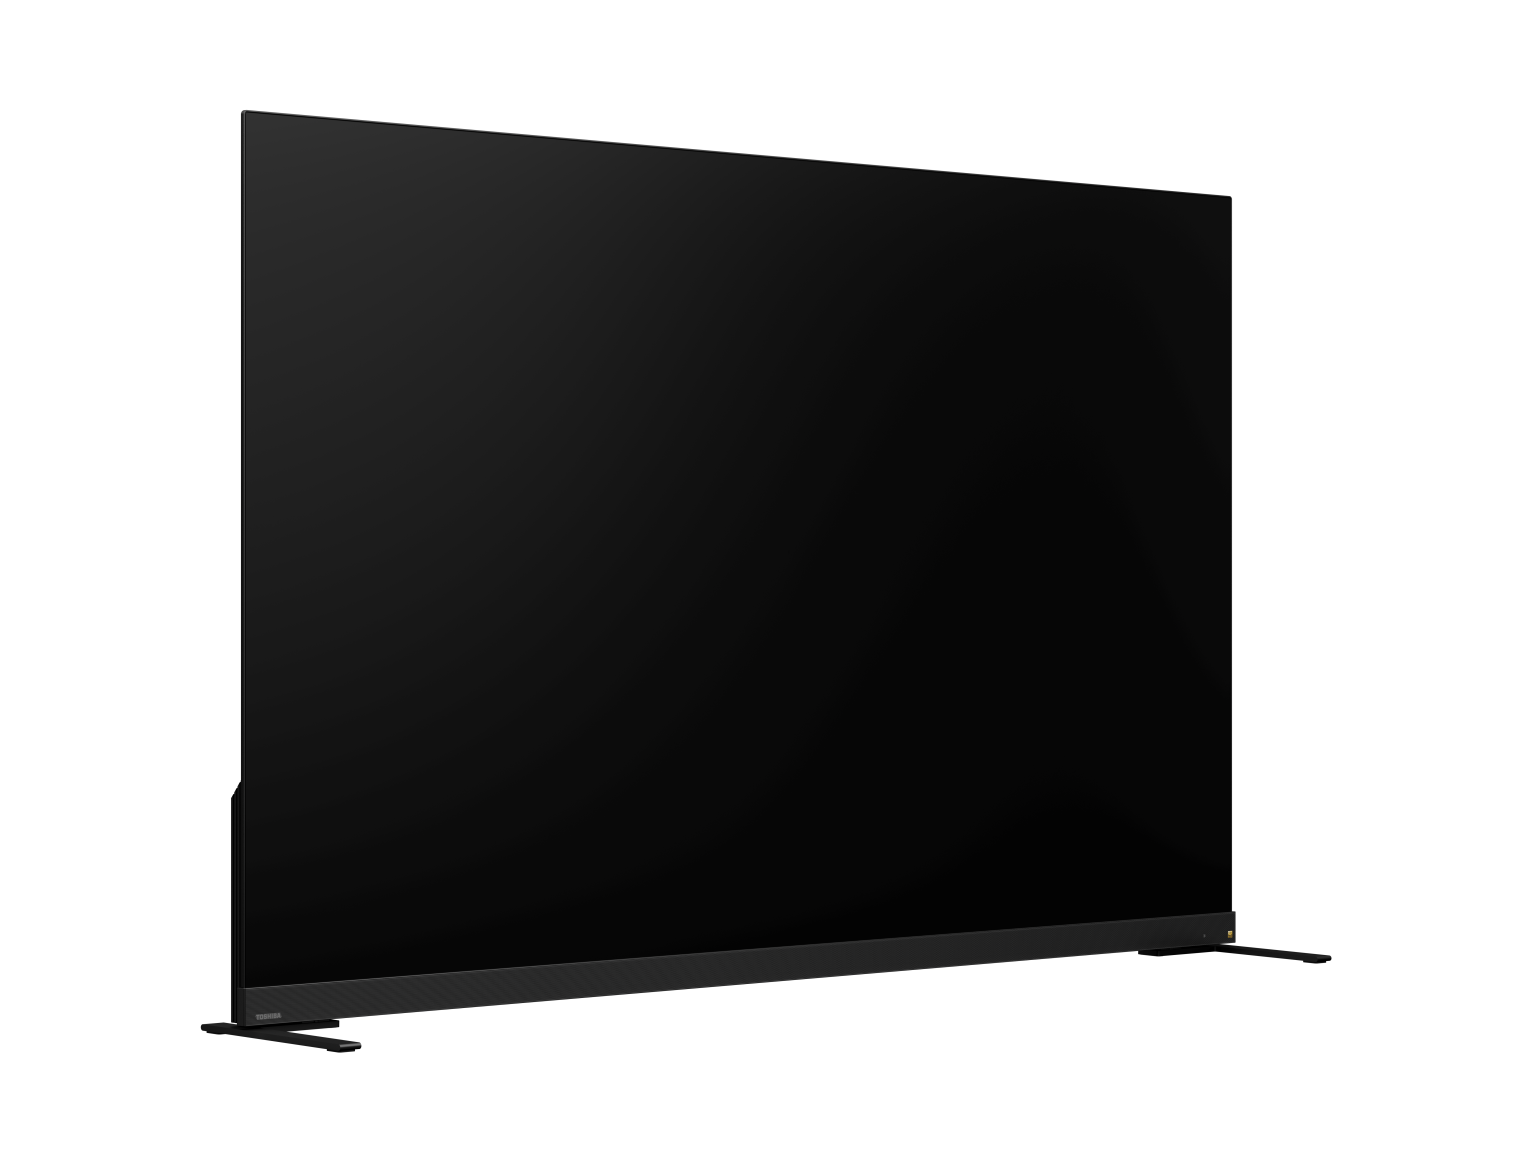 TV OLED 4K 65inch (65X9900L) - VIDDA TV - OLED 4K - Công nghệ âm thanh REGZA Power Audio Extreme - Màu sắc nguyên bản - Âm trầm mạnh mẽ - Loa 113W - Tần số quét 120Hz - Hàng chính hãng - Bảo hành 2 năm